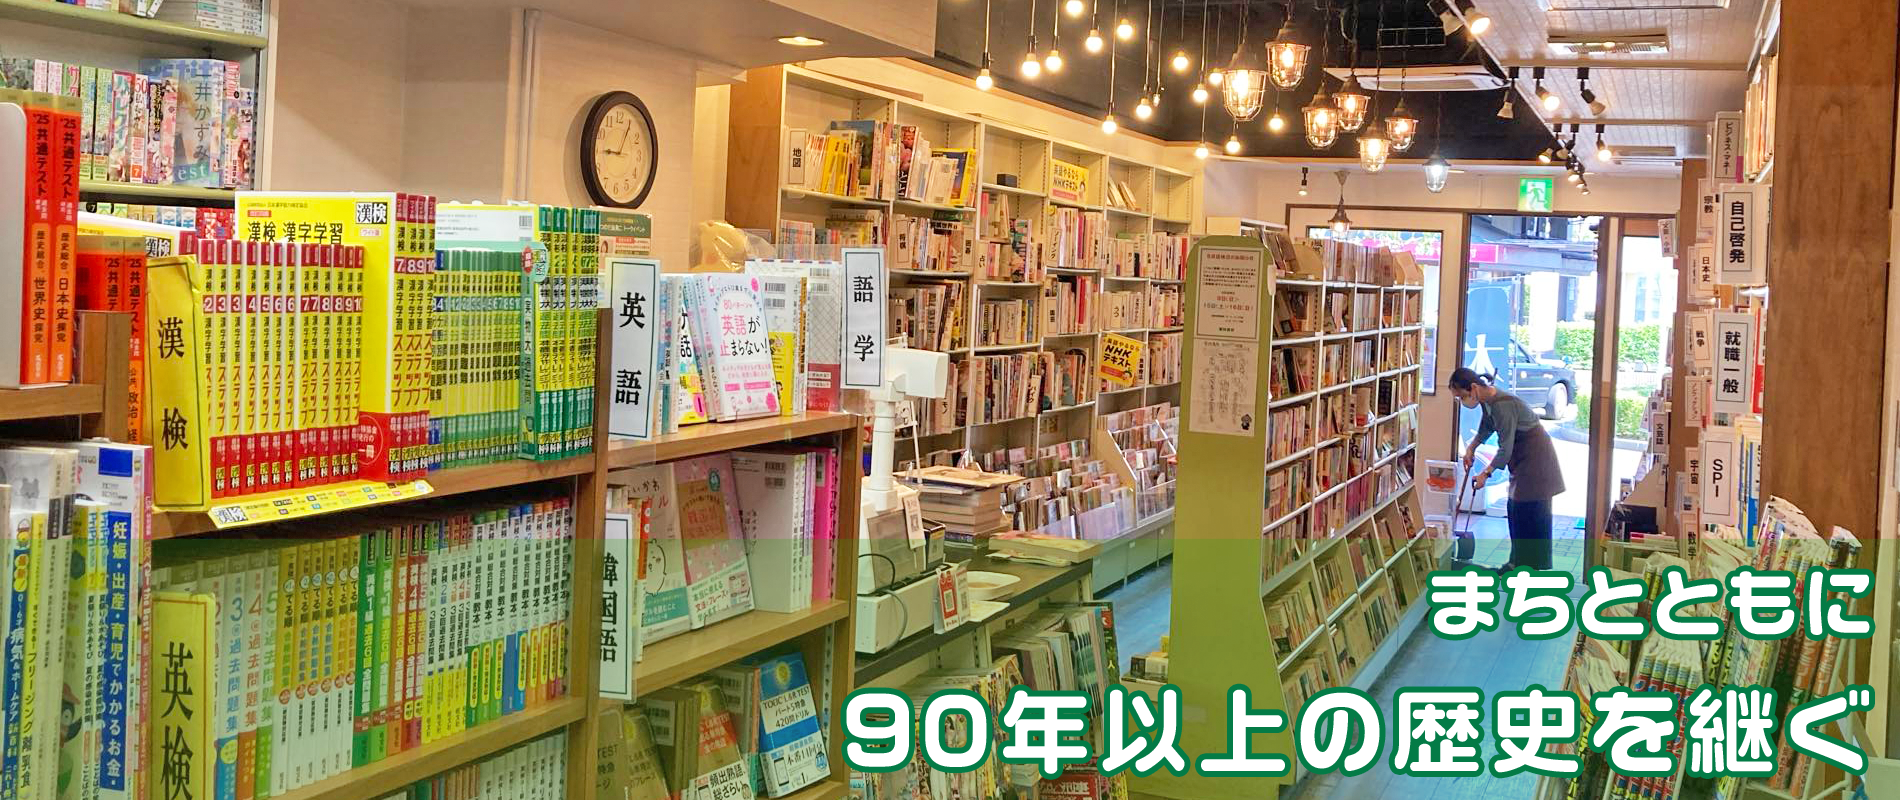 小阪駅前「栗林書房」昔ながらの本屋さん